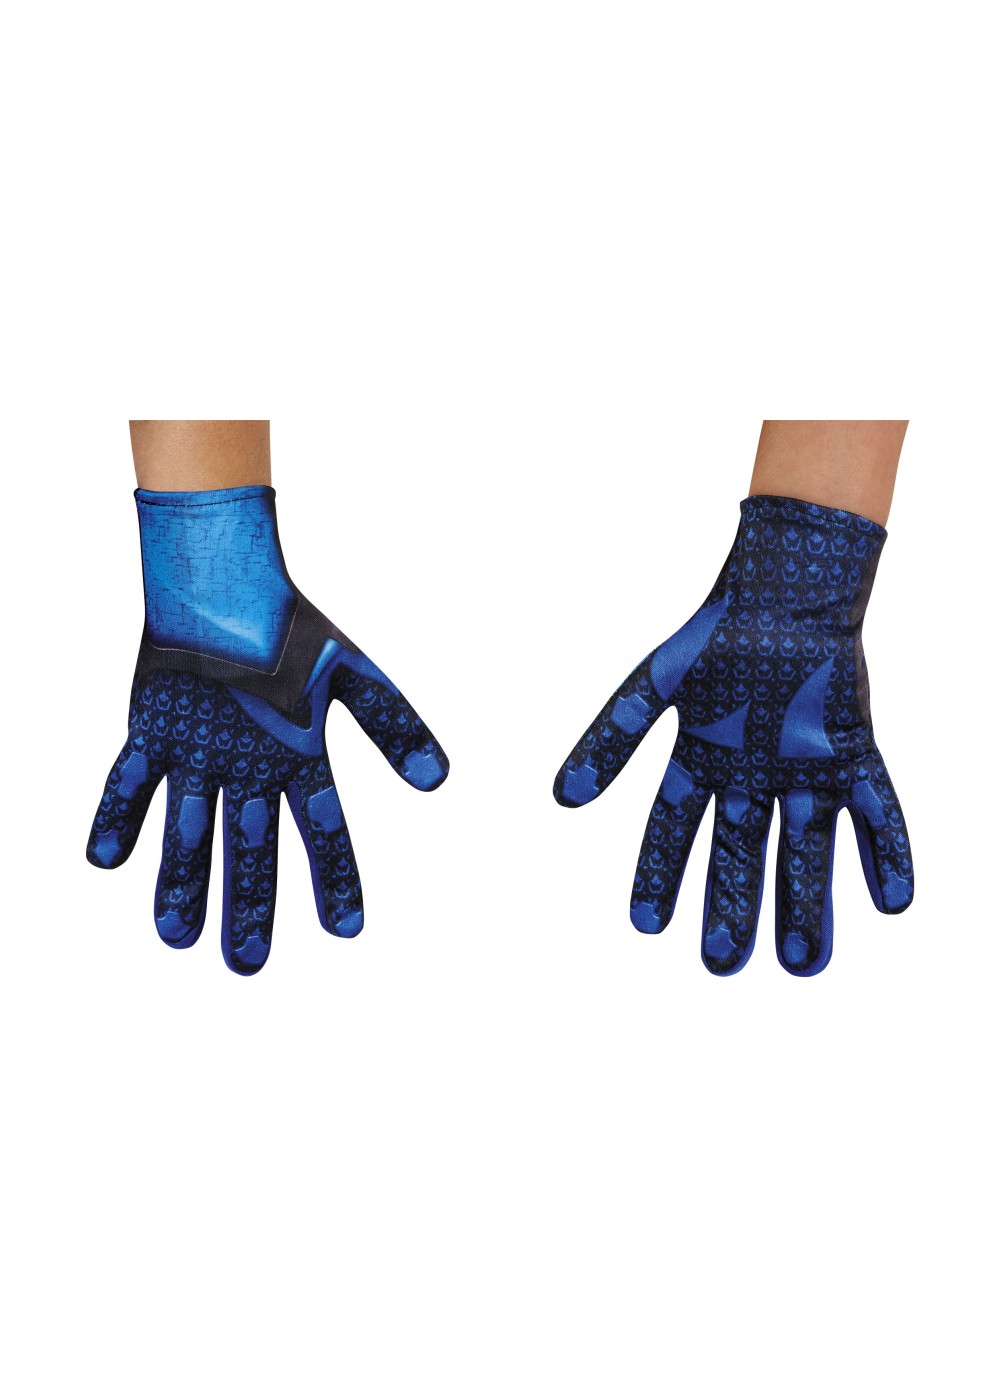 Blue Power Ranger Boys Costume Gloves